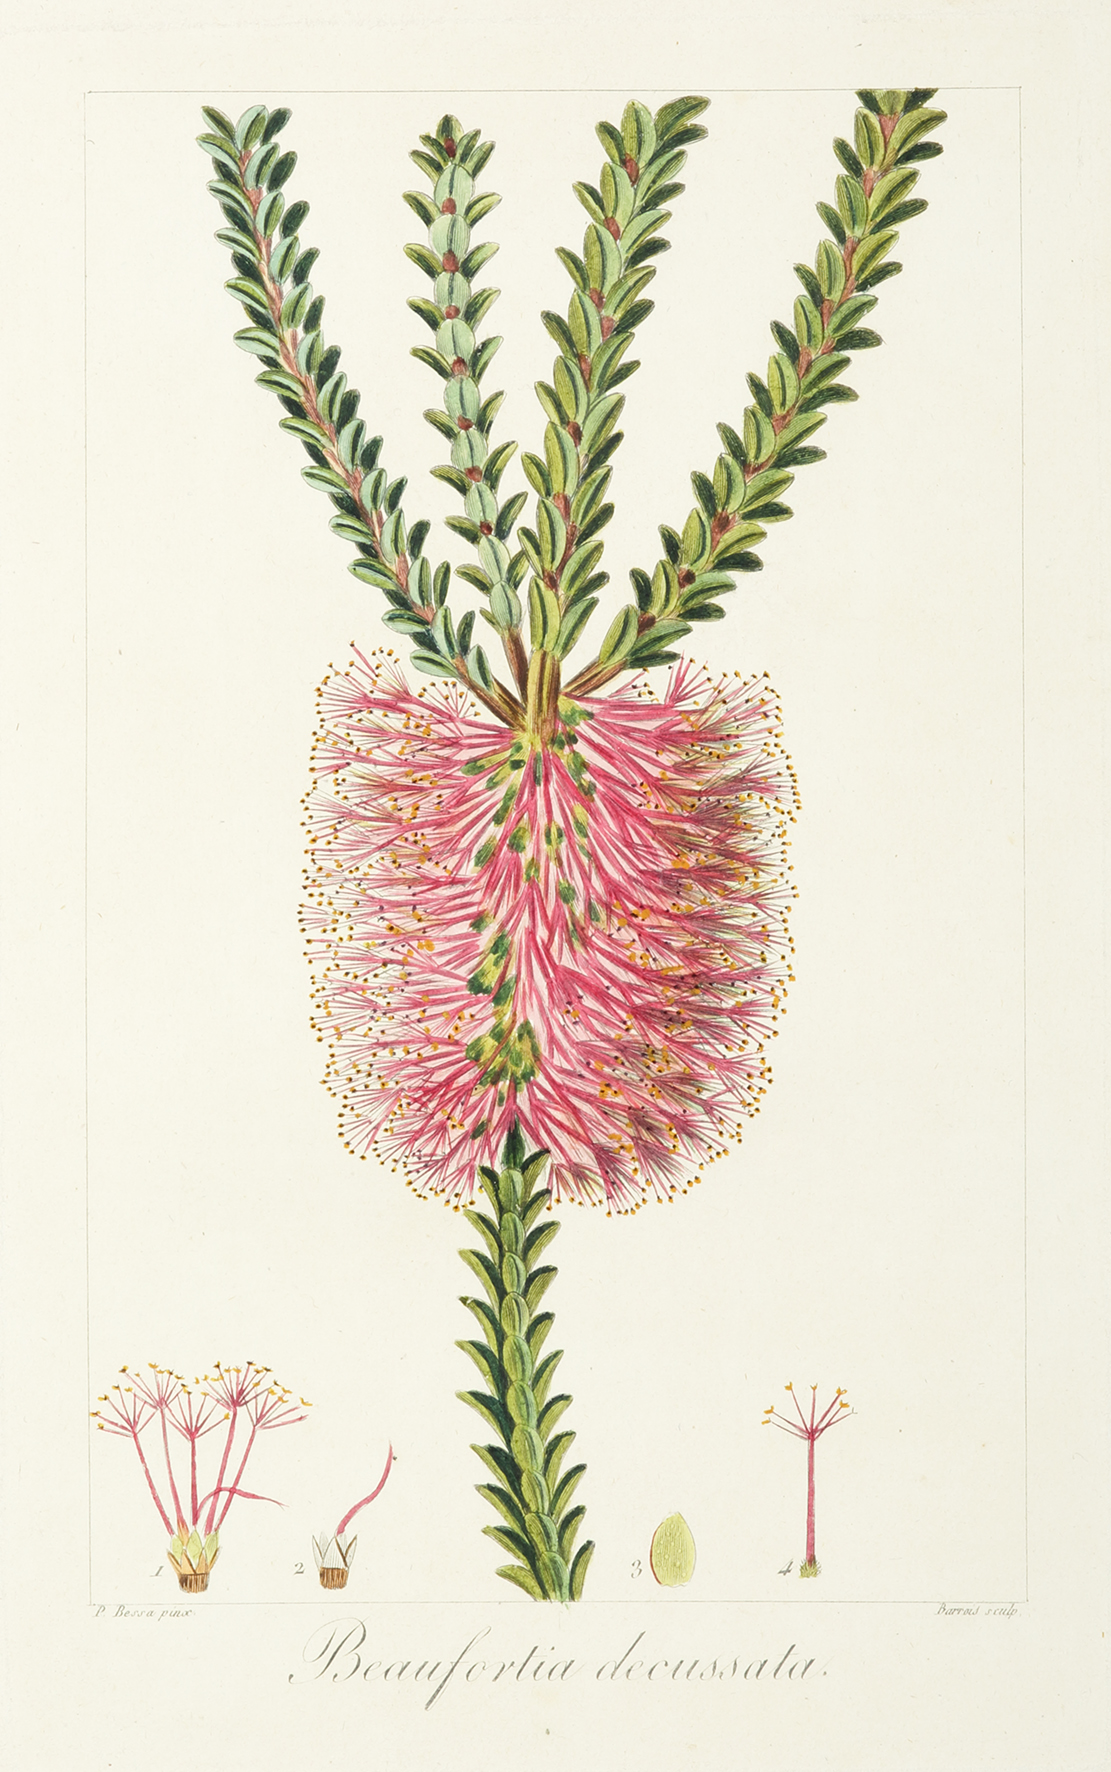 Beaufortia decussata - Antique Print from 1816